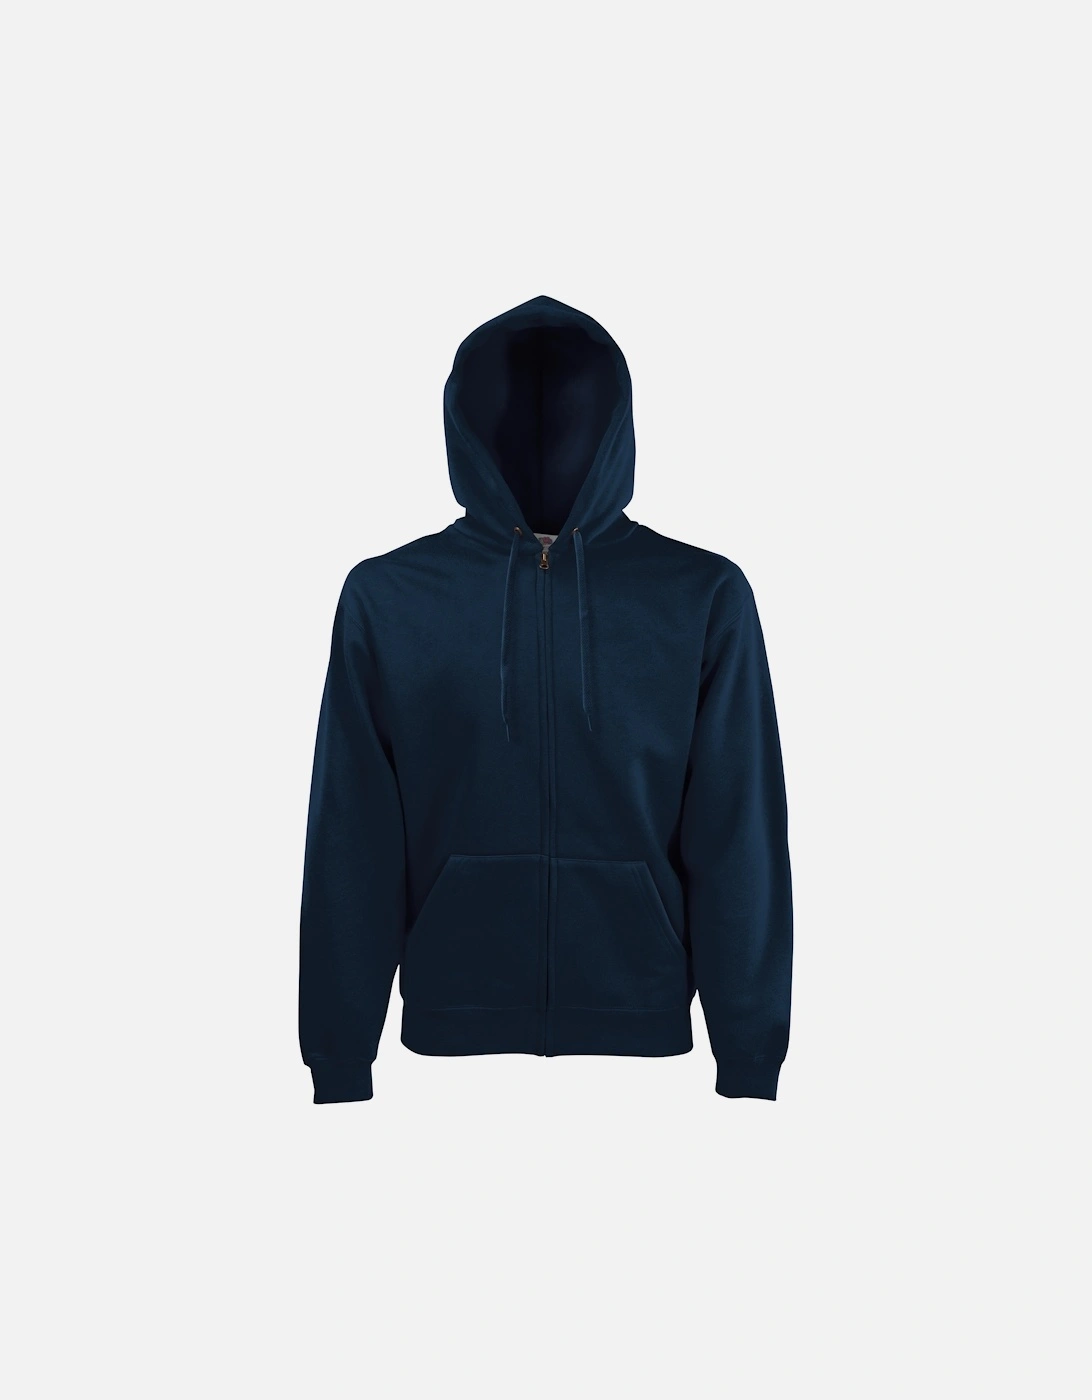 Mens Premium 70/30 Hooded Zip-Up Sweatshirt / Hoodie, 4 of 3